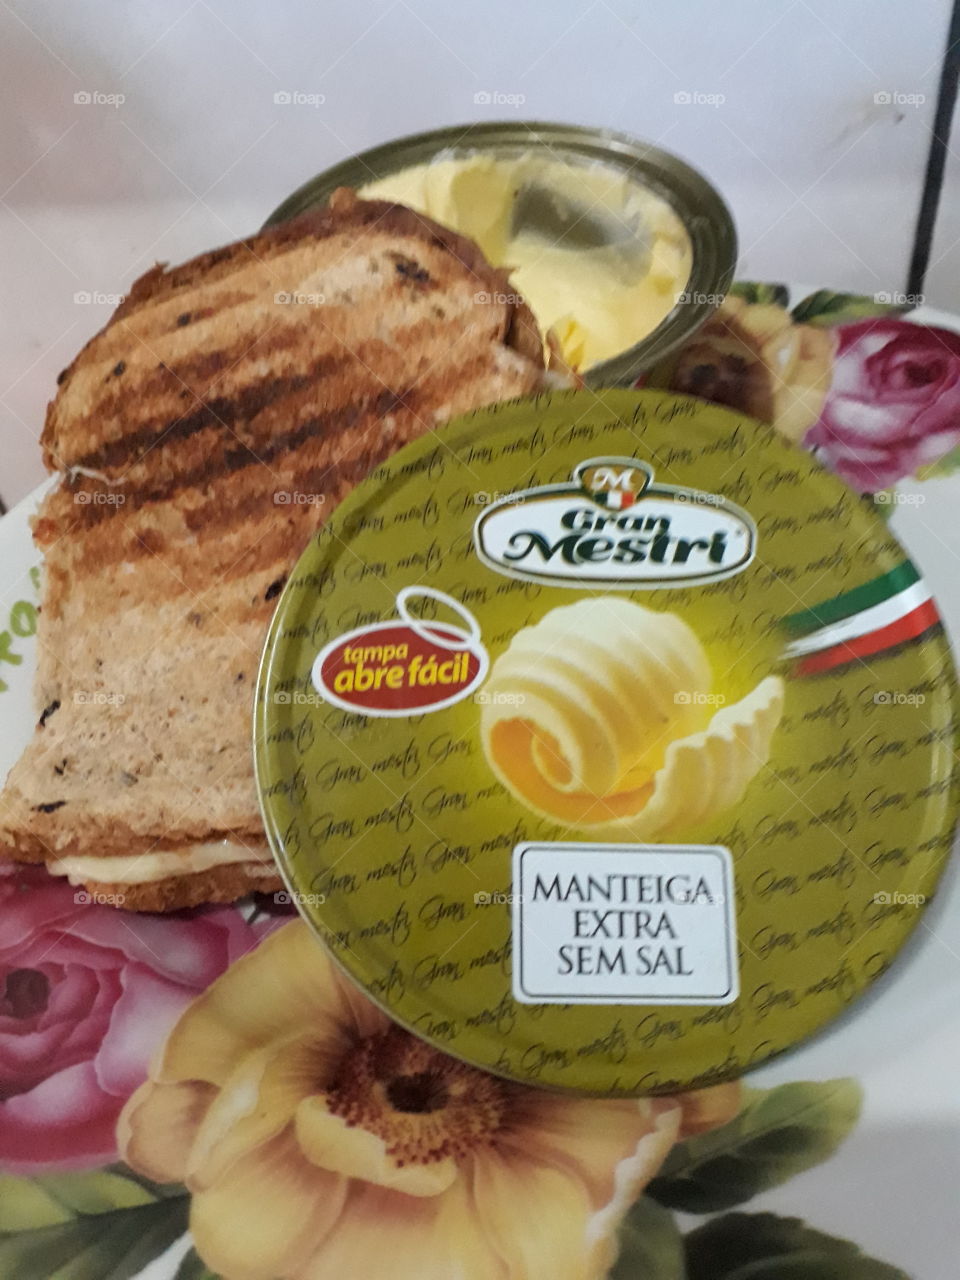 Gran Mestri Manteiga extra sem sal, alta gastronomia desenvolvida pelas    maos de mestres italianos, primeira manteiga com embalagem em lata do Brasil e abre facil!